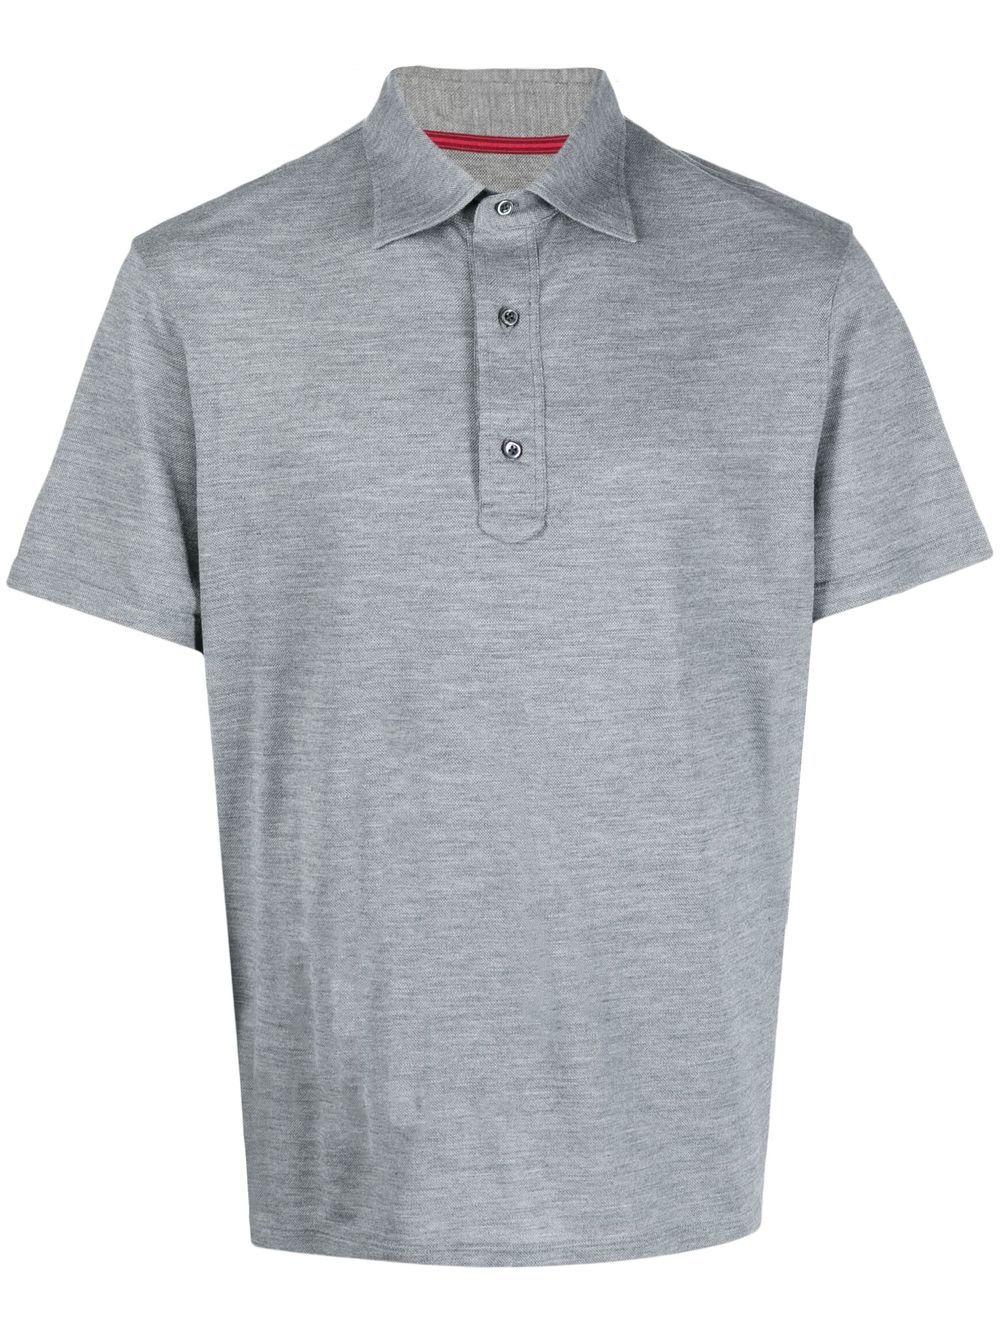 POLOS Coton Dunhill pour homme en coloris Neutre Homme T-shirts T-shirts Dunhill 